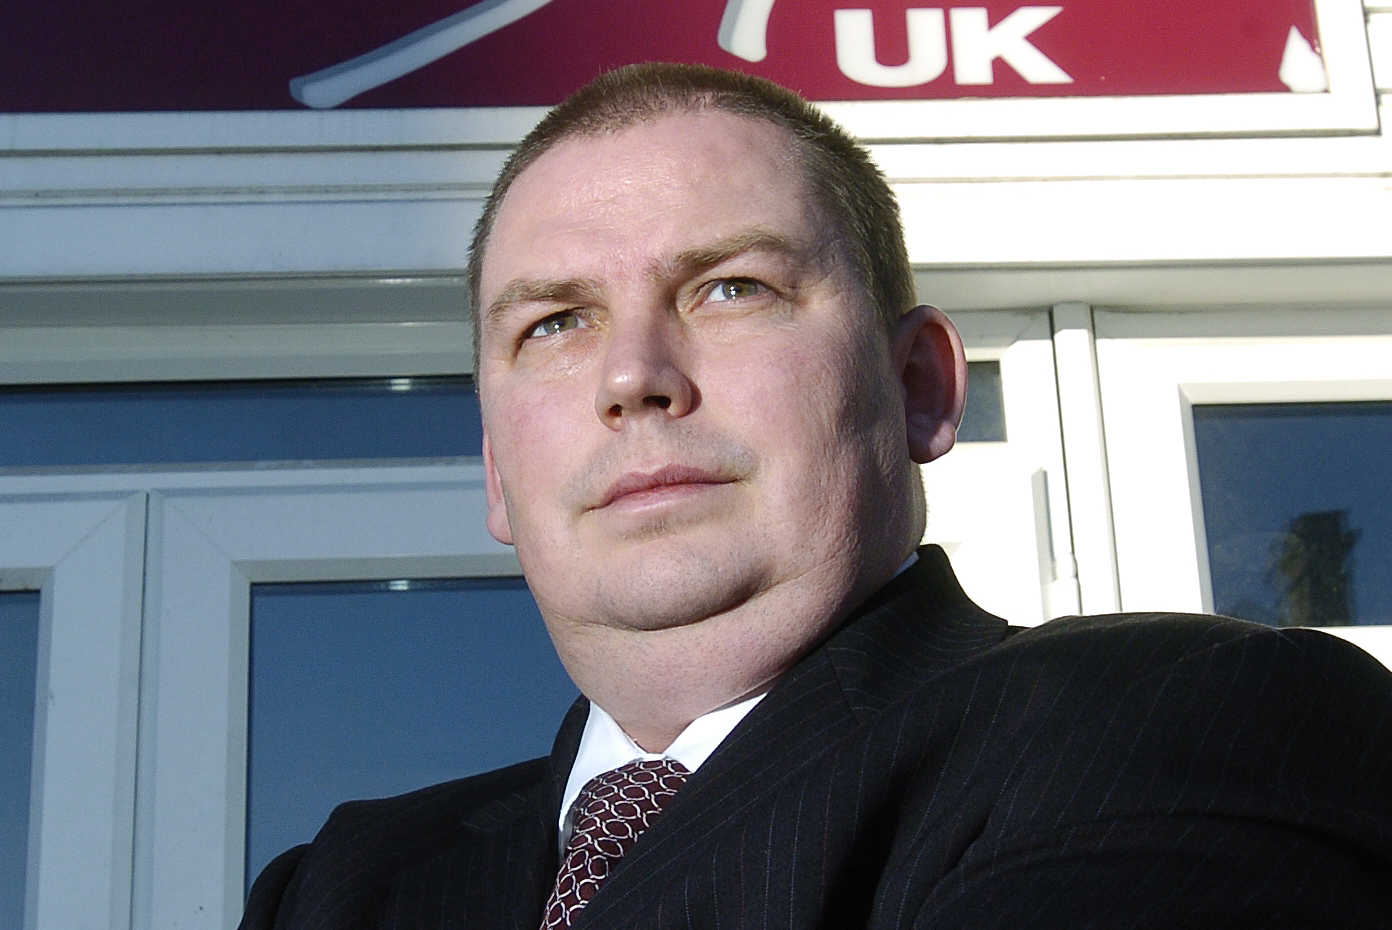 Safestyle UK founder John Ross is made bankrupt